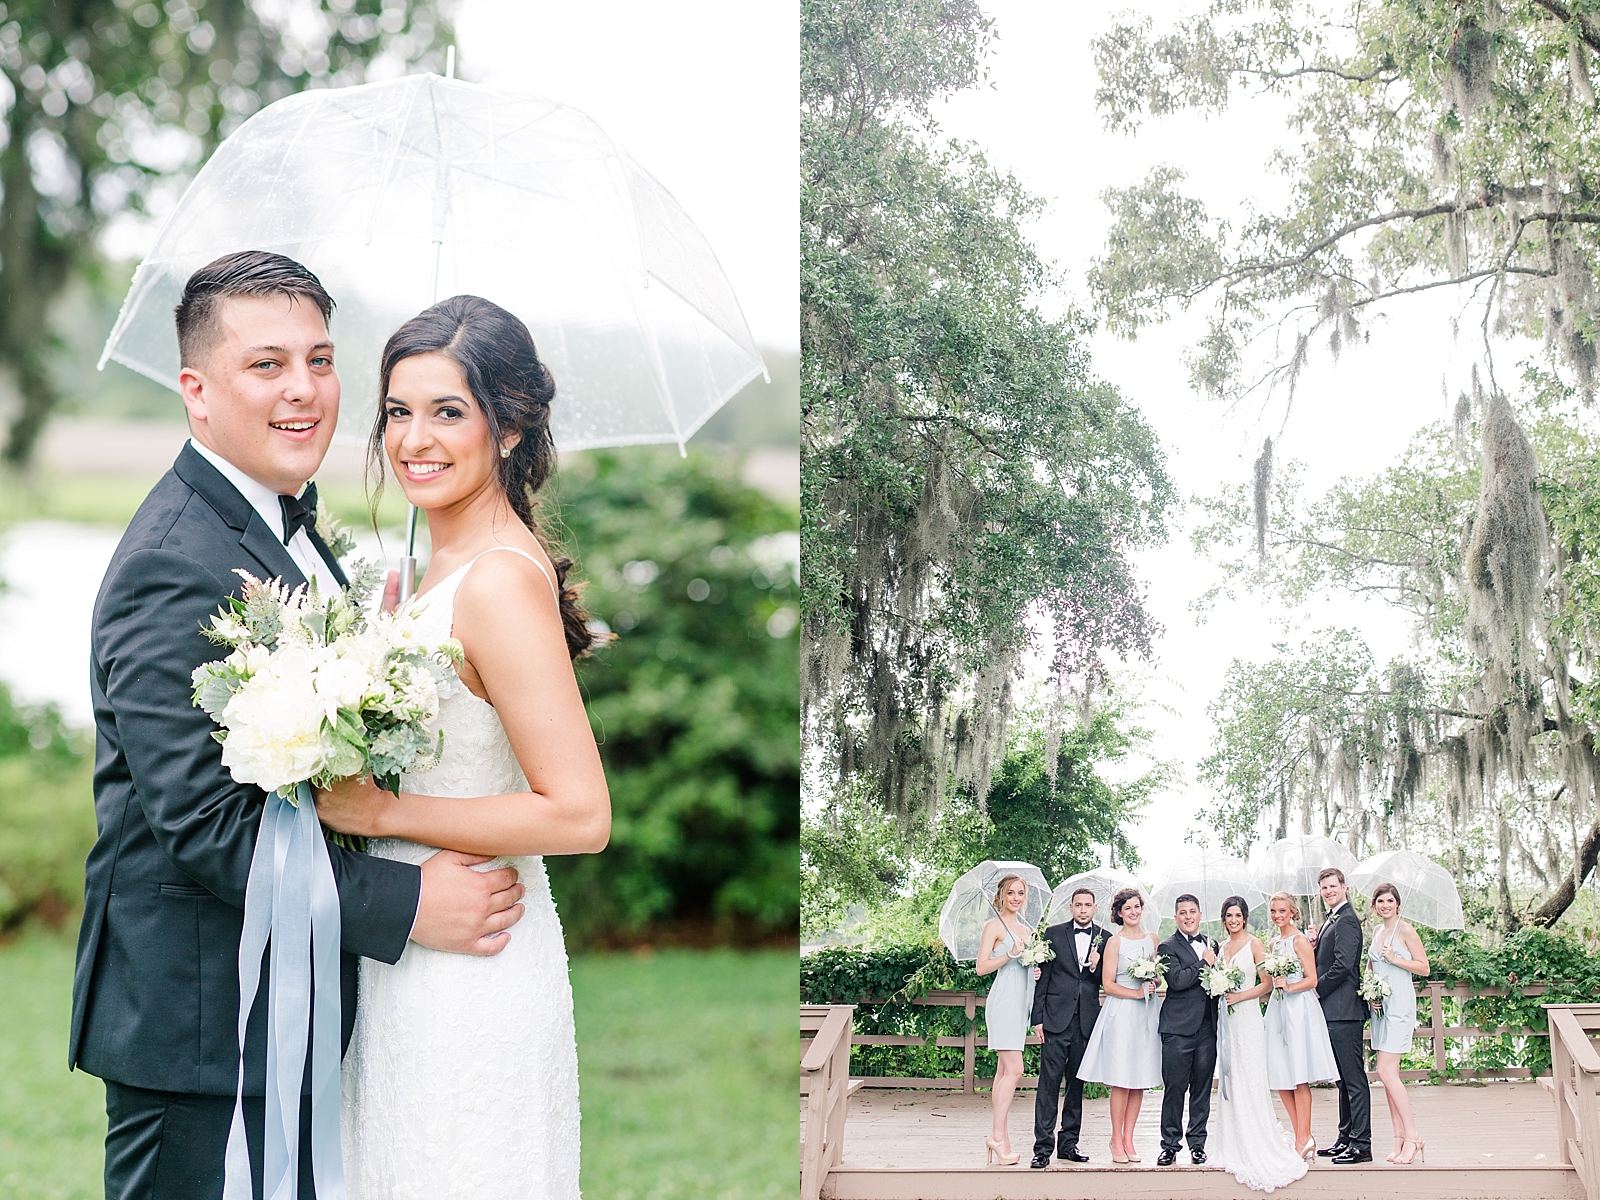 Magnolia Plantation Wedding Bride and Groom Under Umbrella and Bridal Party with Umbrellas Photos